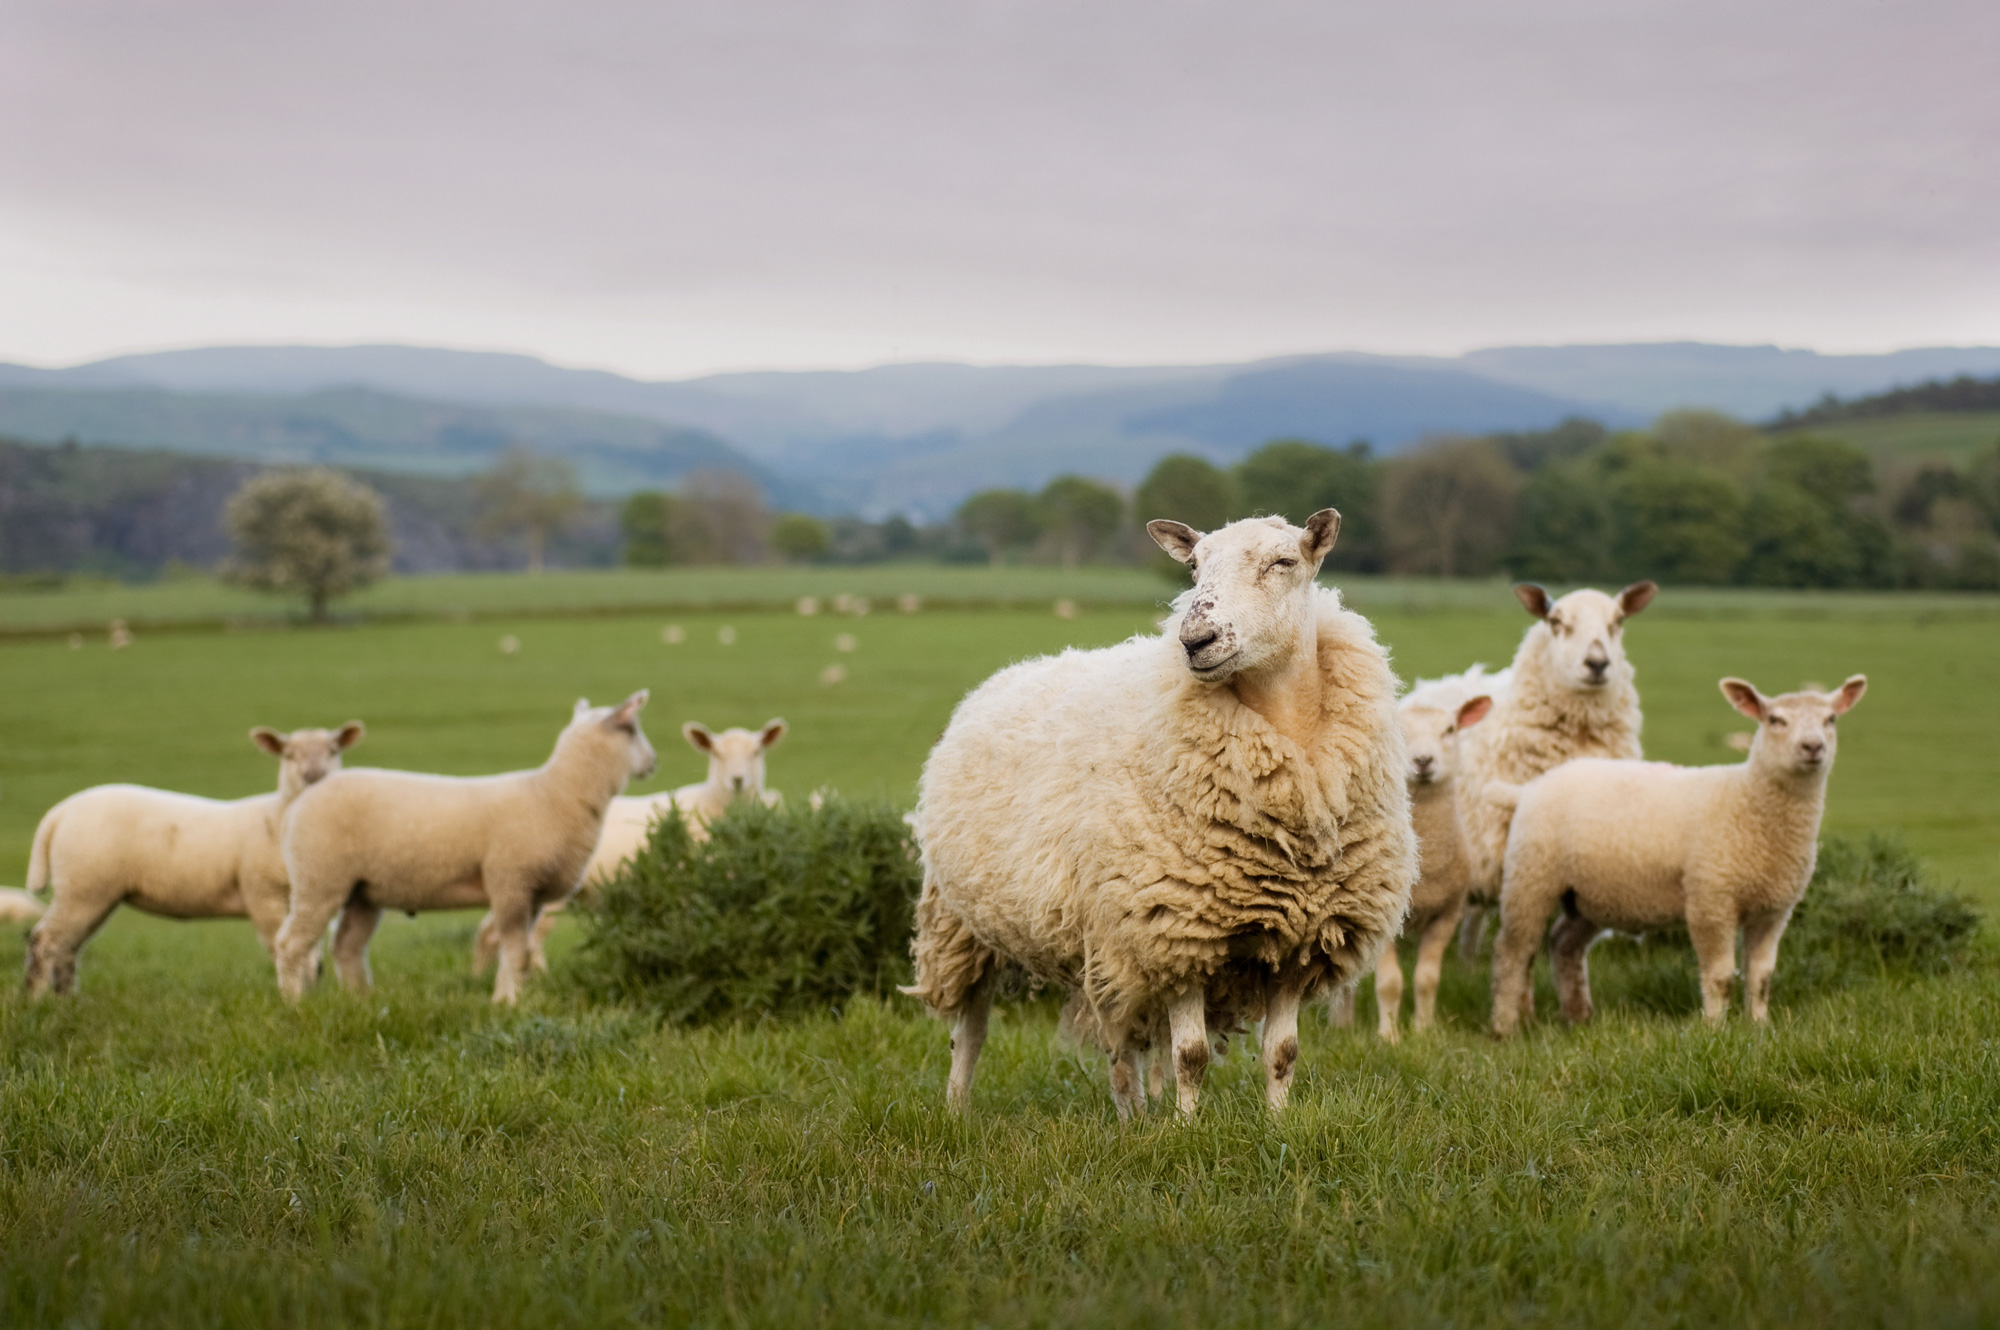 Lamb In Walsh Outside In A Grassy Field